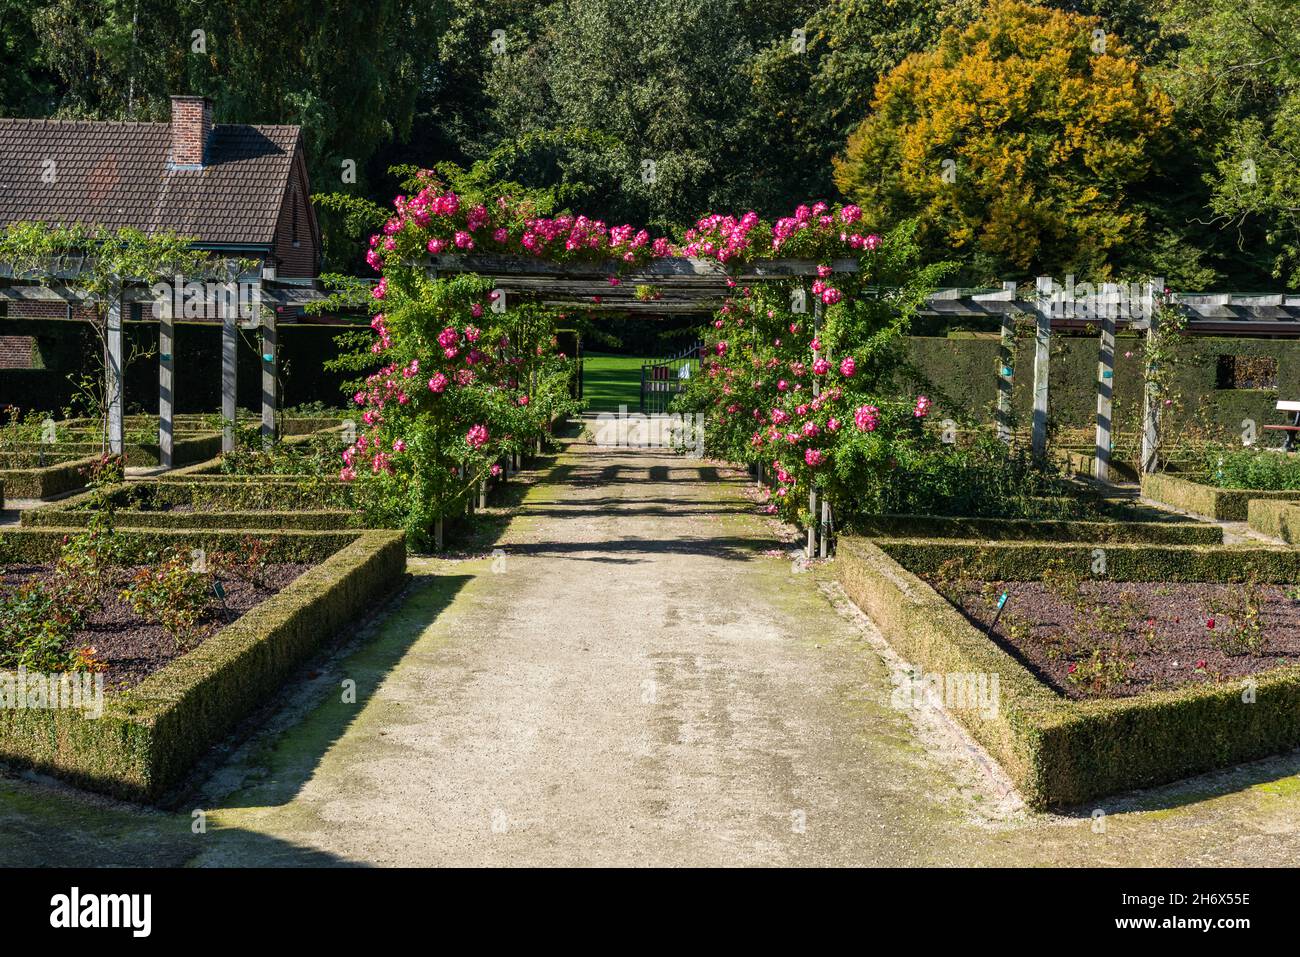 Sint-Pieters-Leeuw, Flämische Region - Belgien - 10 17 2021: Eingang des Rosengartens im Garten und Park von Coloma Stockfoto